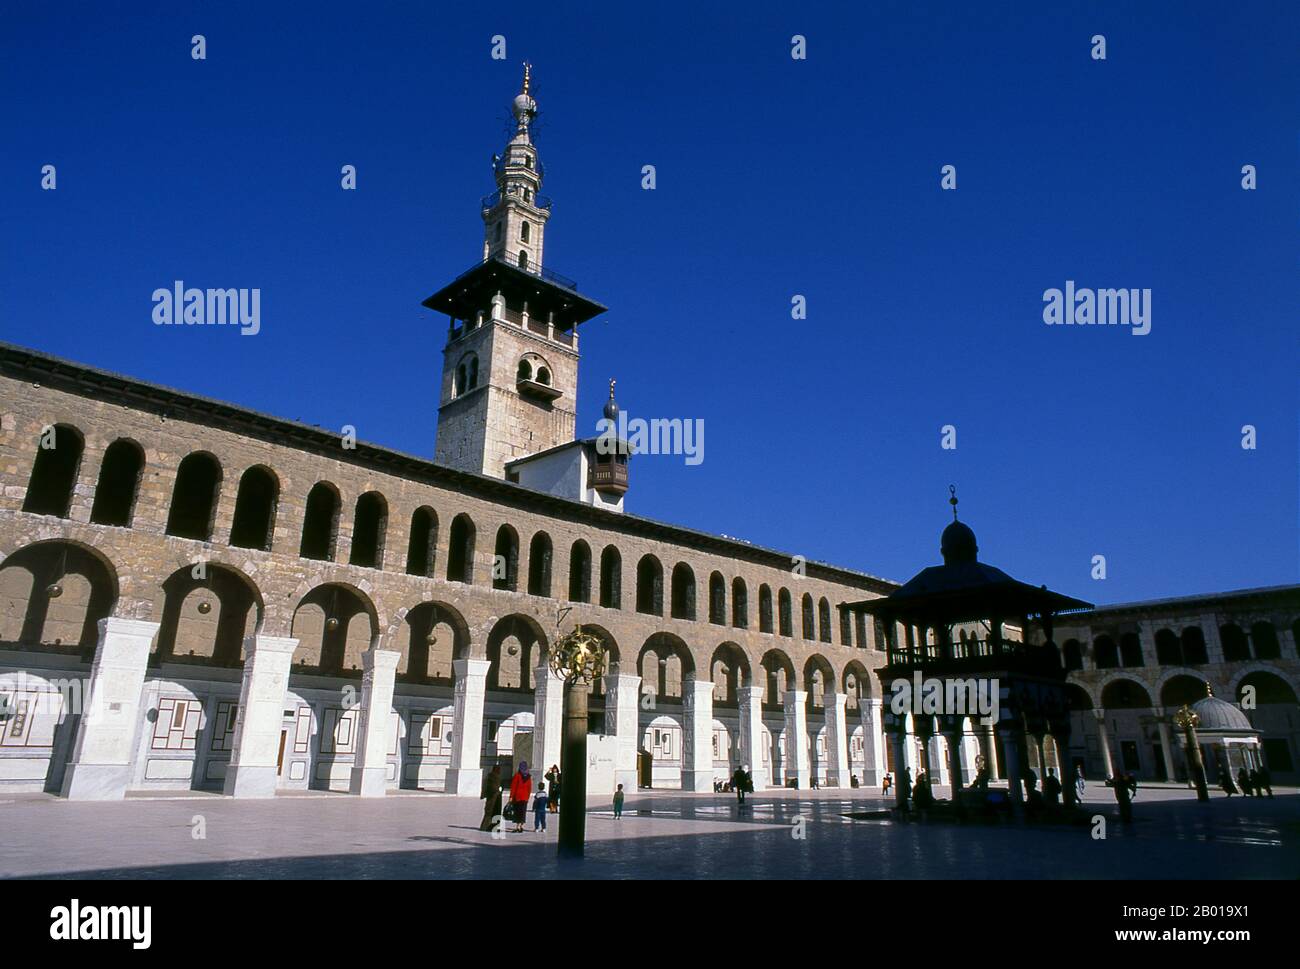 Syrien: Minarett der Braut und der zentrale Innenhof, Umayyad-Moschee, Damaskus. Die Umayyad-Moschee, auch bekannt als die große Moschee von Damaskus, ist eine der größten und ältesten Moscheen der Welt. Es gilt als der viertheiligste Ort im Islam. Der Bau der Moschee soll kurz nach der arabischen Eroberung von Damaskus im Jahr 634 begonnen haben. Die Moschee enthält einen Schrein, der Johannes dem Täufer gewidmet ist, sowie das Grab von Saladin. Stockfoto